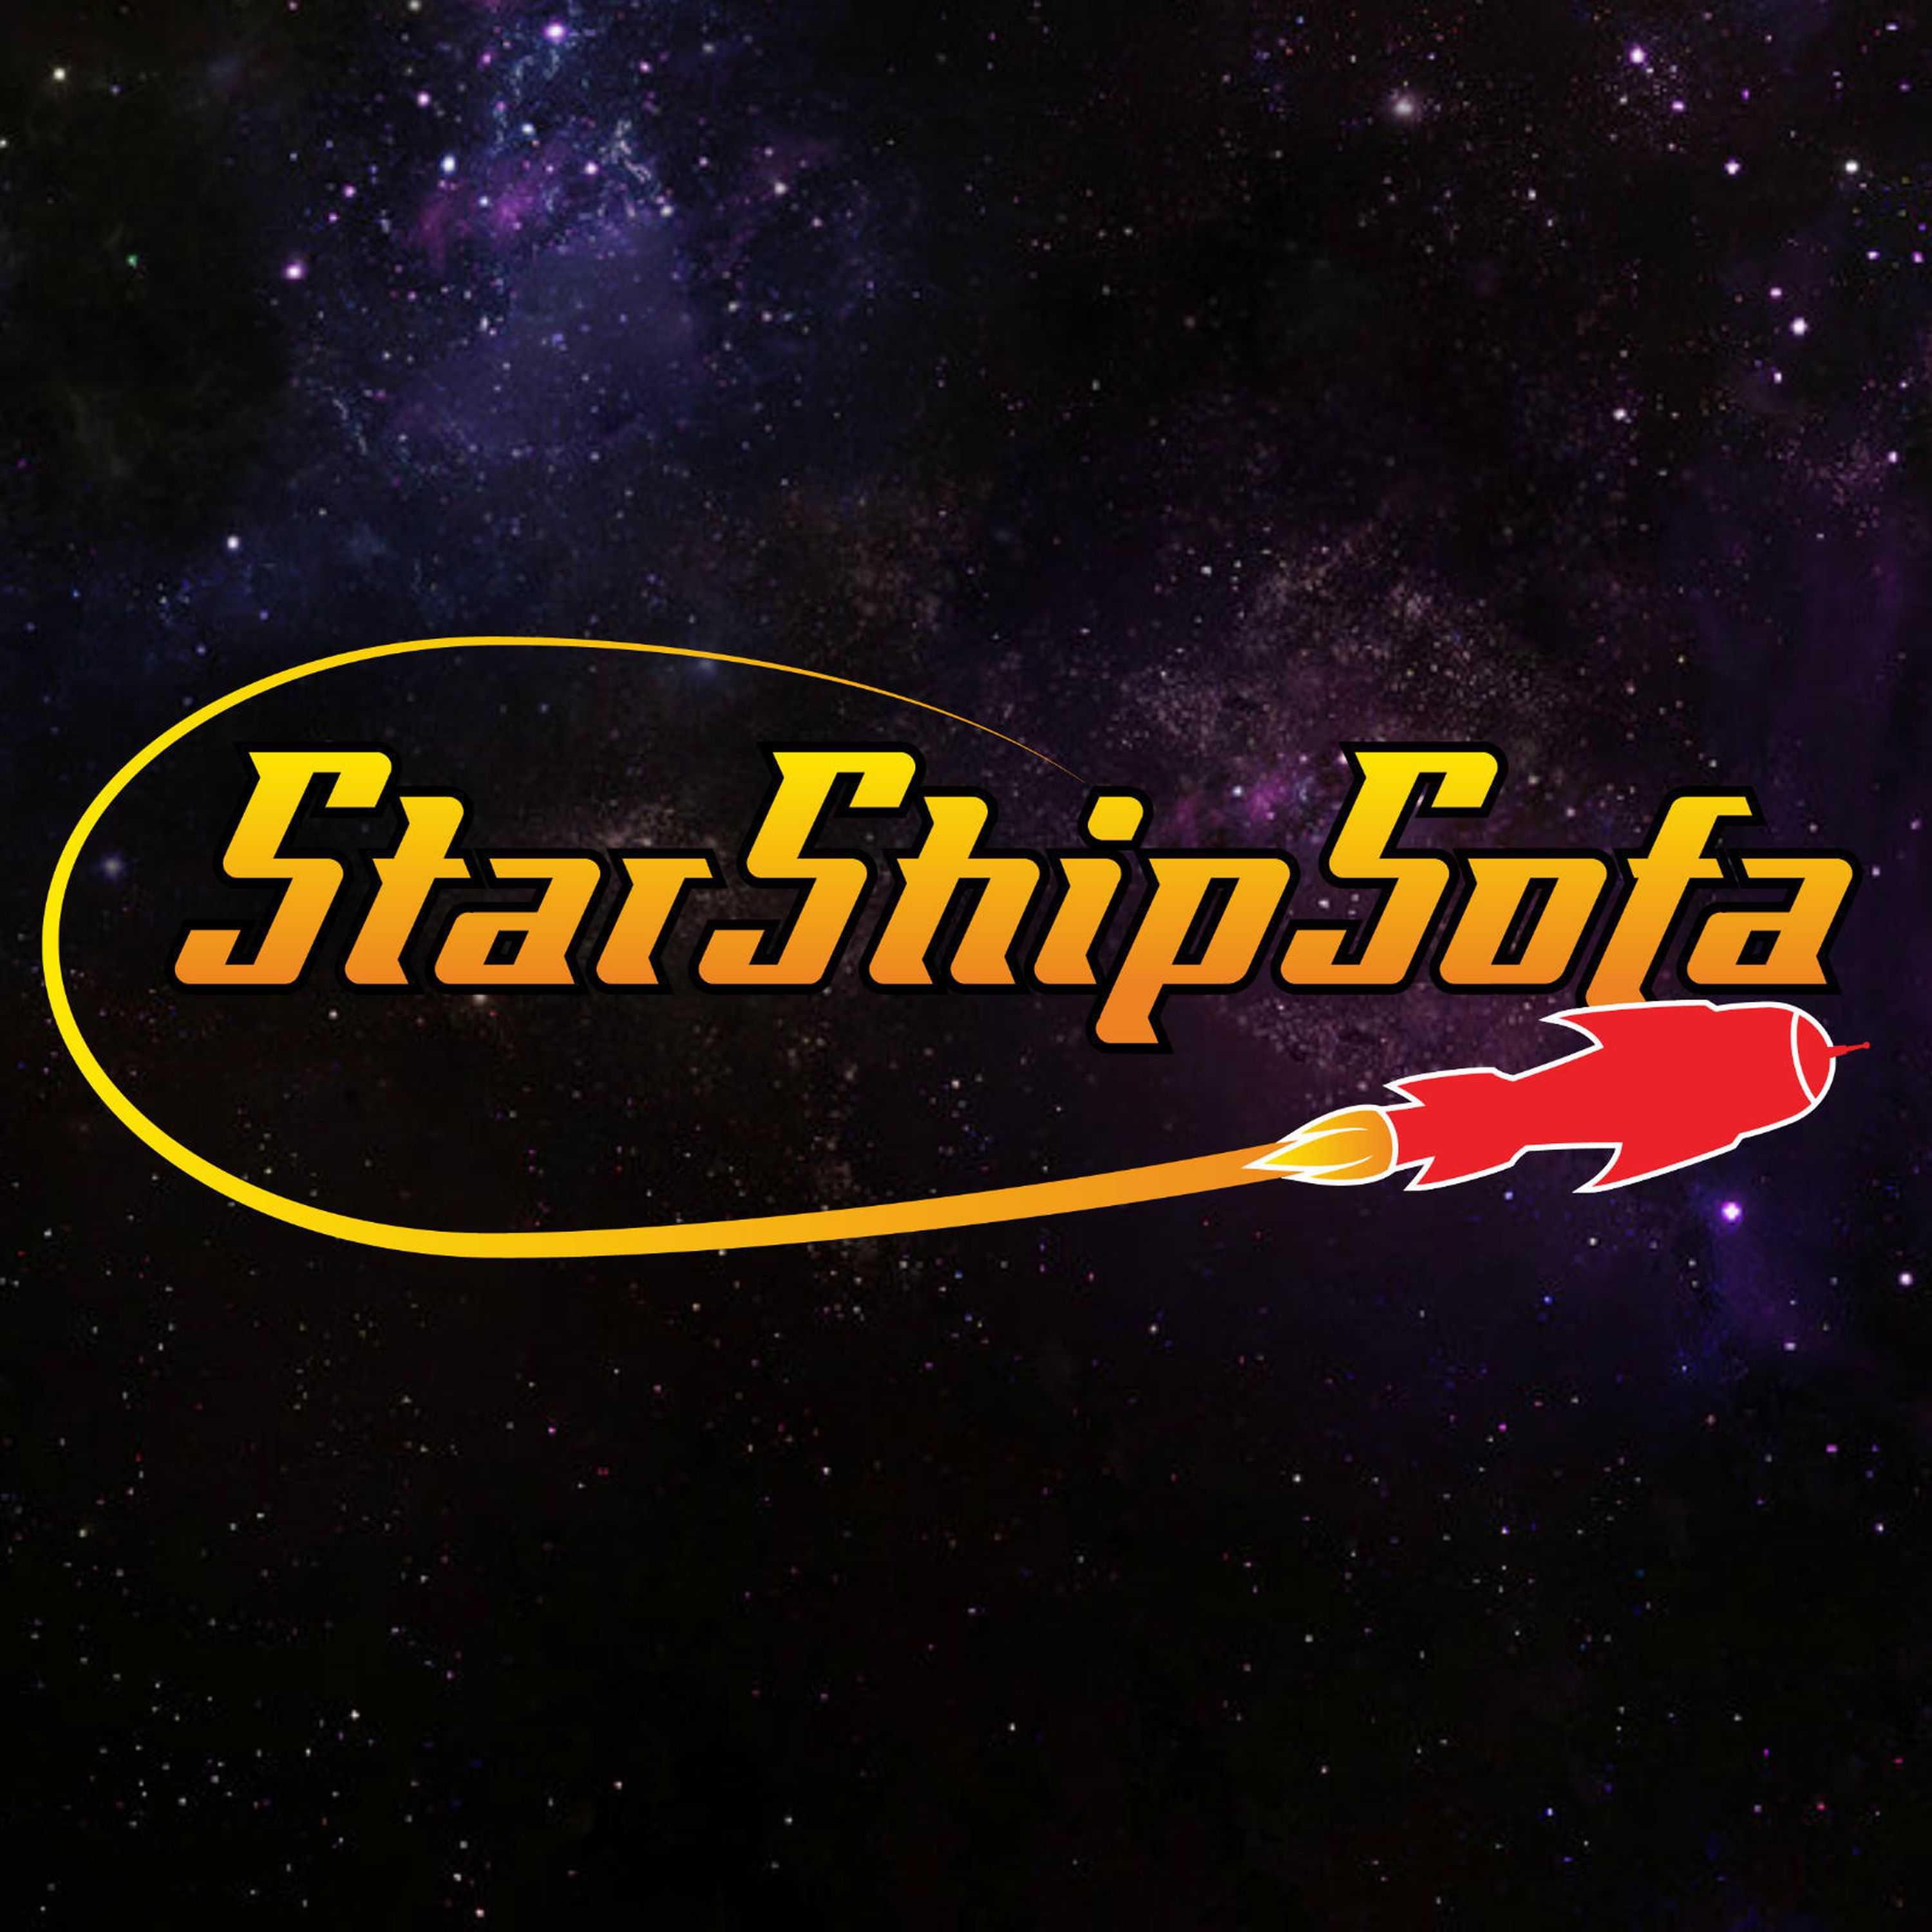 StarShipSofa No 603 Elad Haber